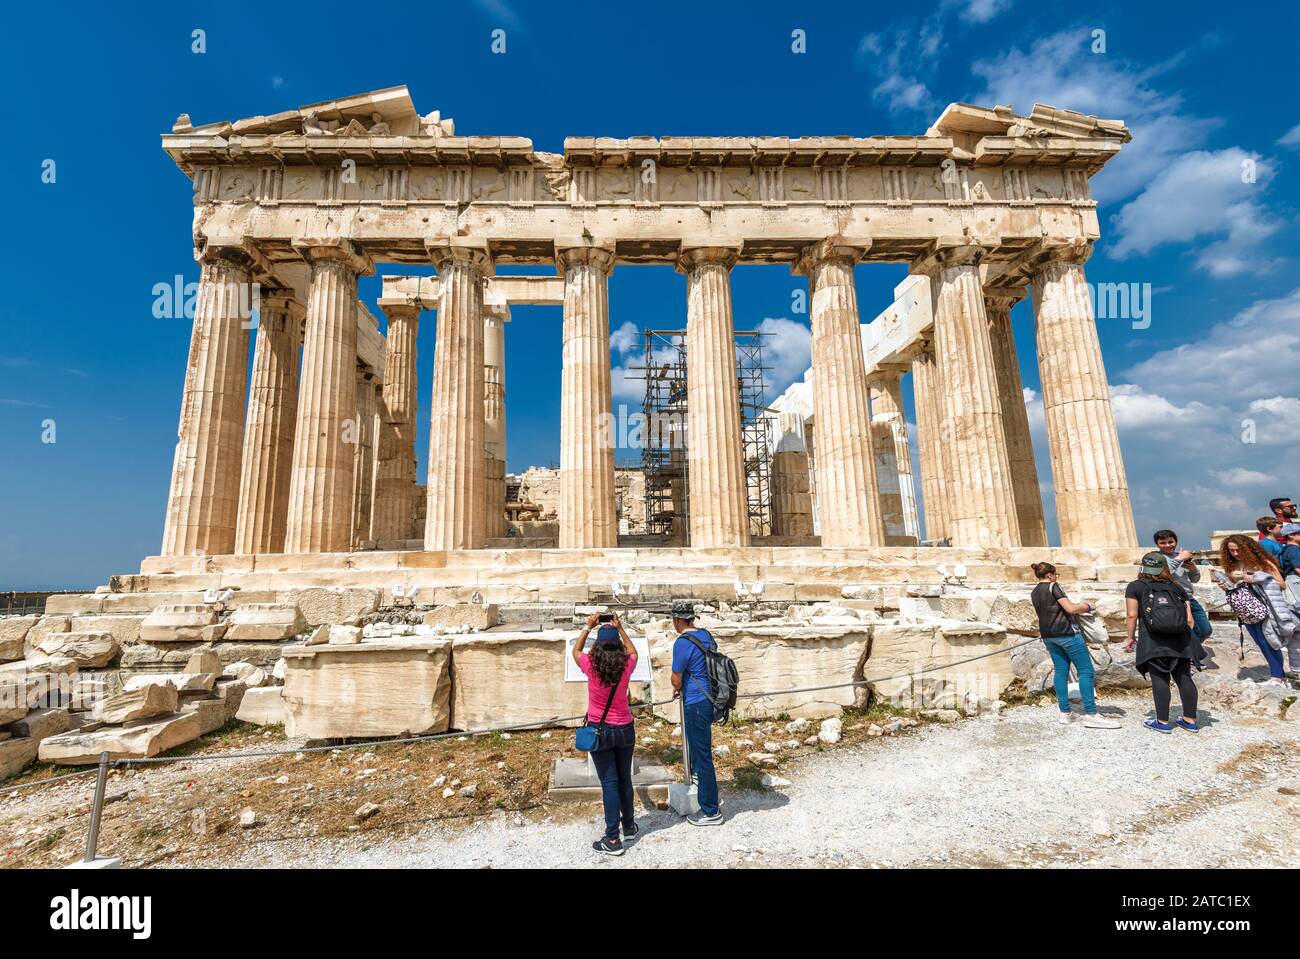 Athen - 8. Mai 2018: Die Menschen besuchen den Altgriechischen Parthenon auf der Akropolis von Athen, Griechenland. Parthenon ist eine der beliebtesten Touristenattraktionen Athens. Co Stockfoto